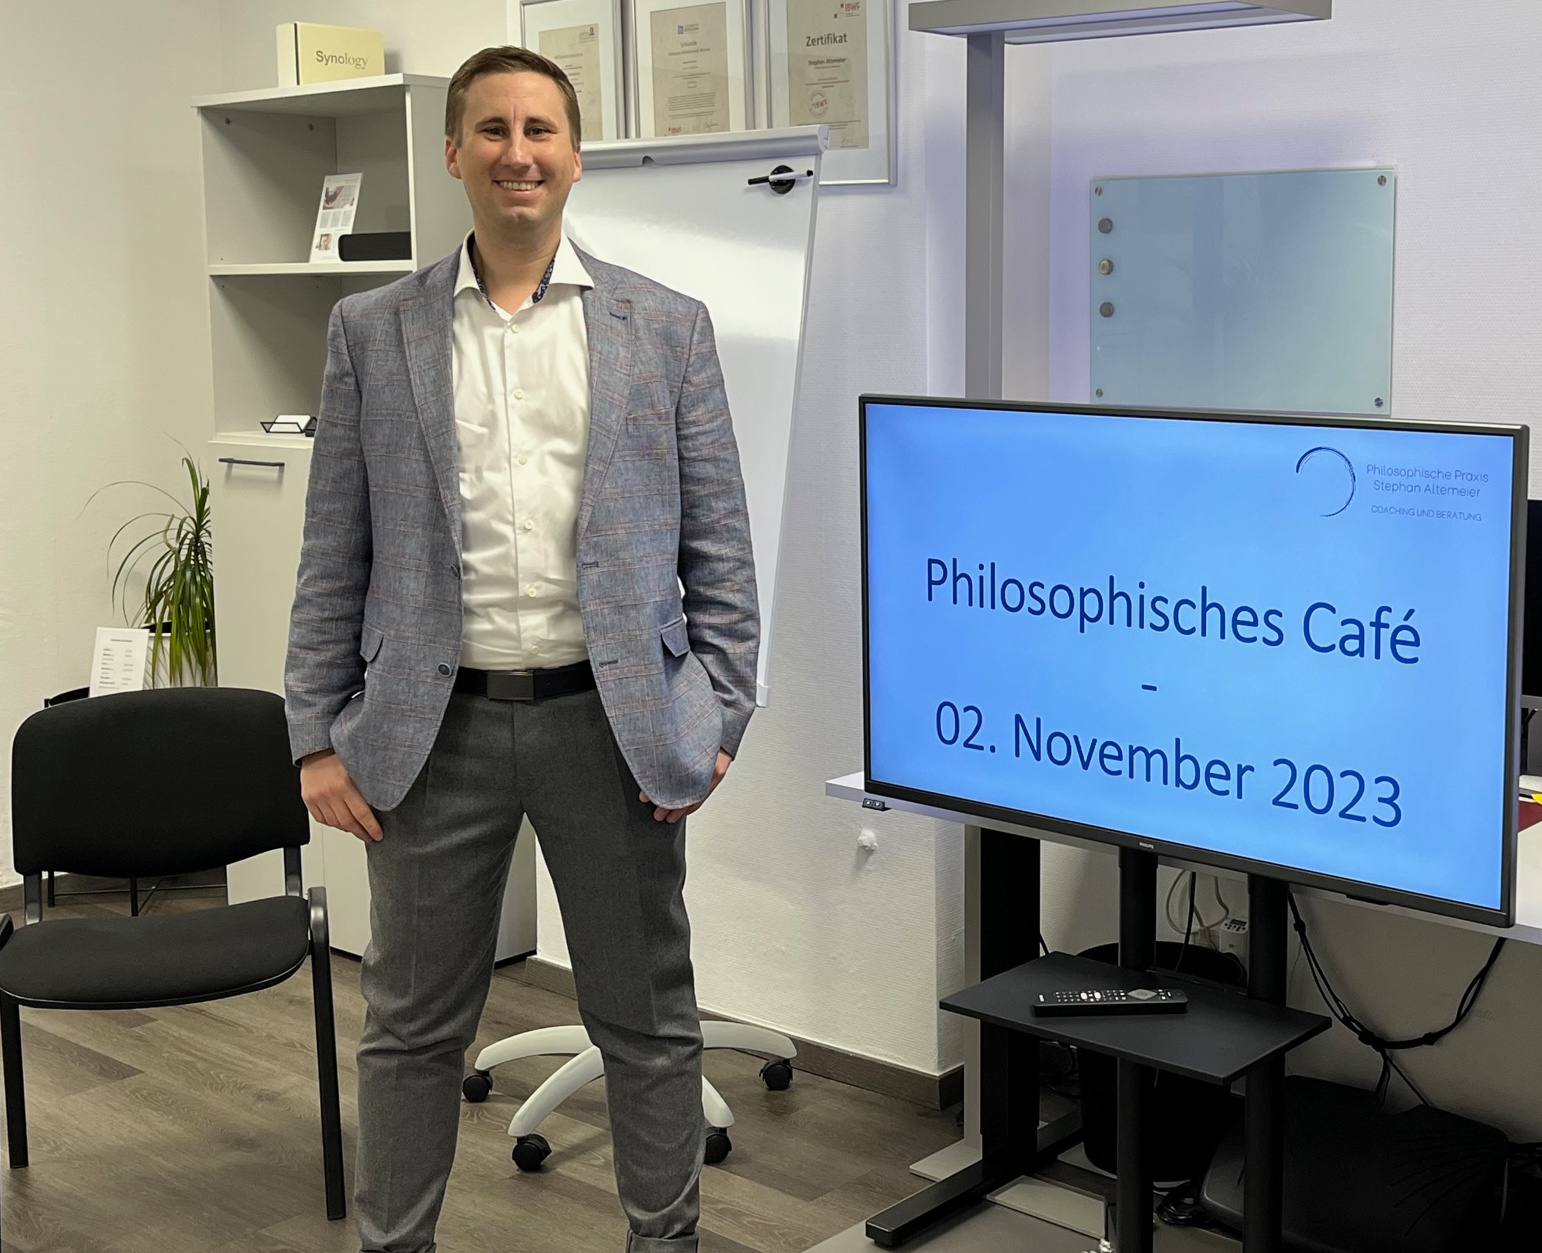 Philosophisches Café Düsseldorf